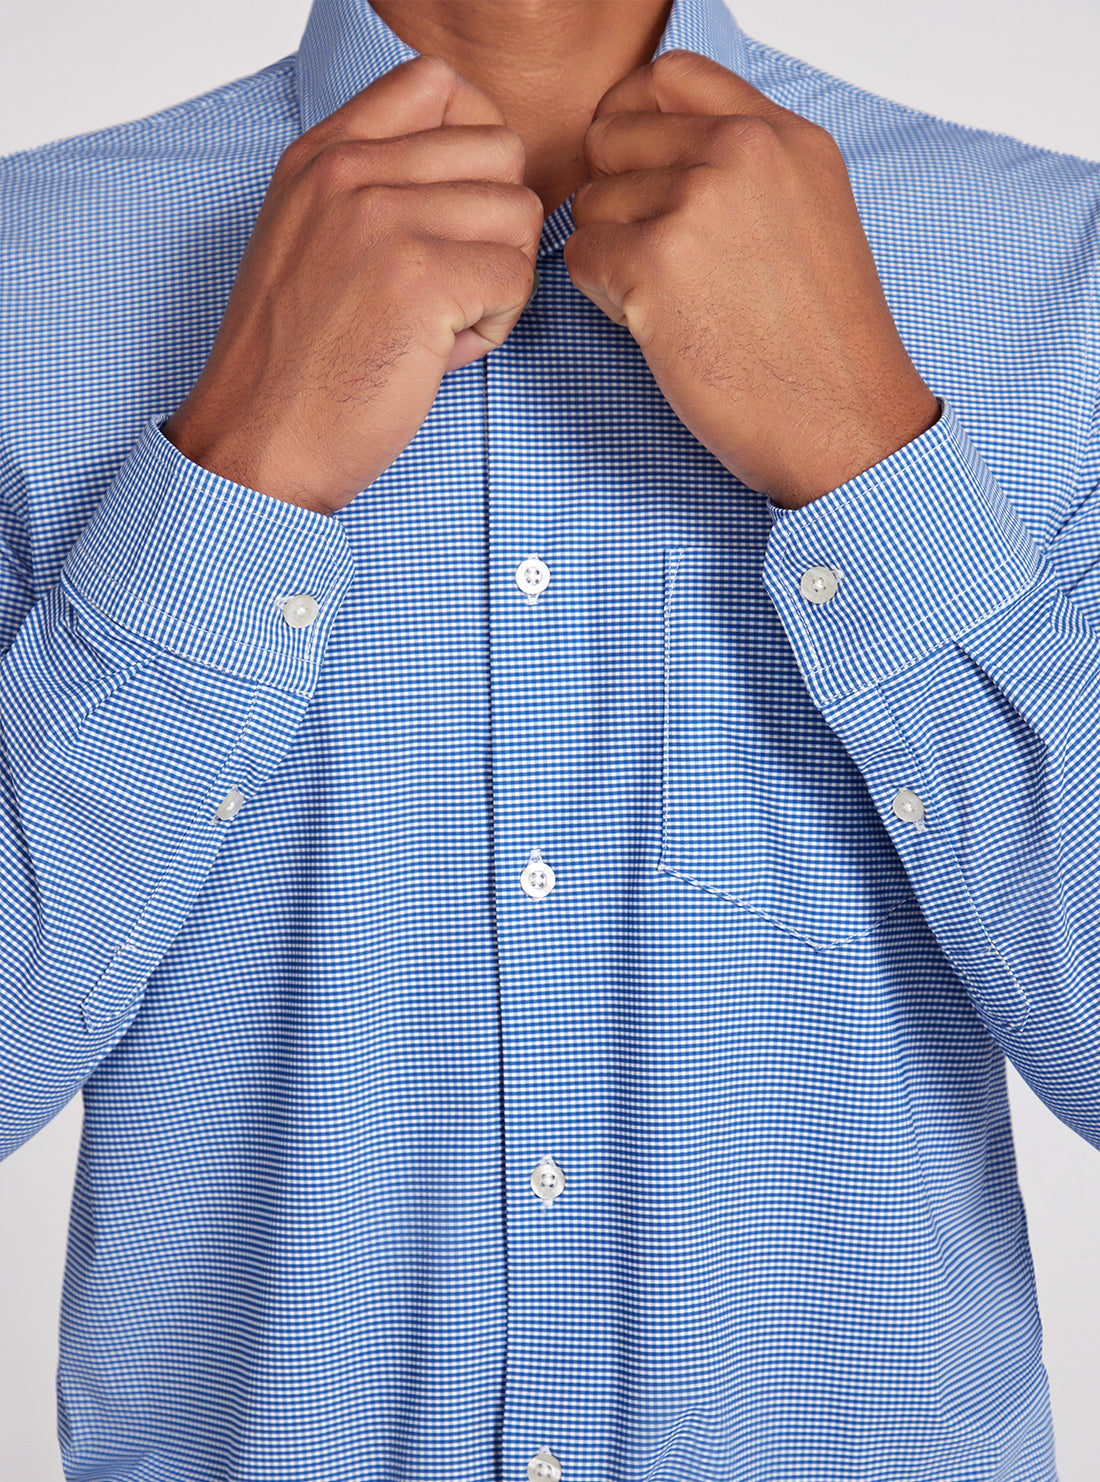 Blue Sunset Tech Stretch Shirt | GUESS Men's apparel | detail view front